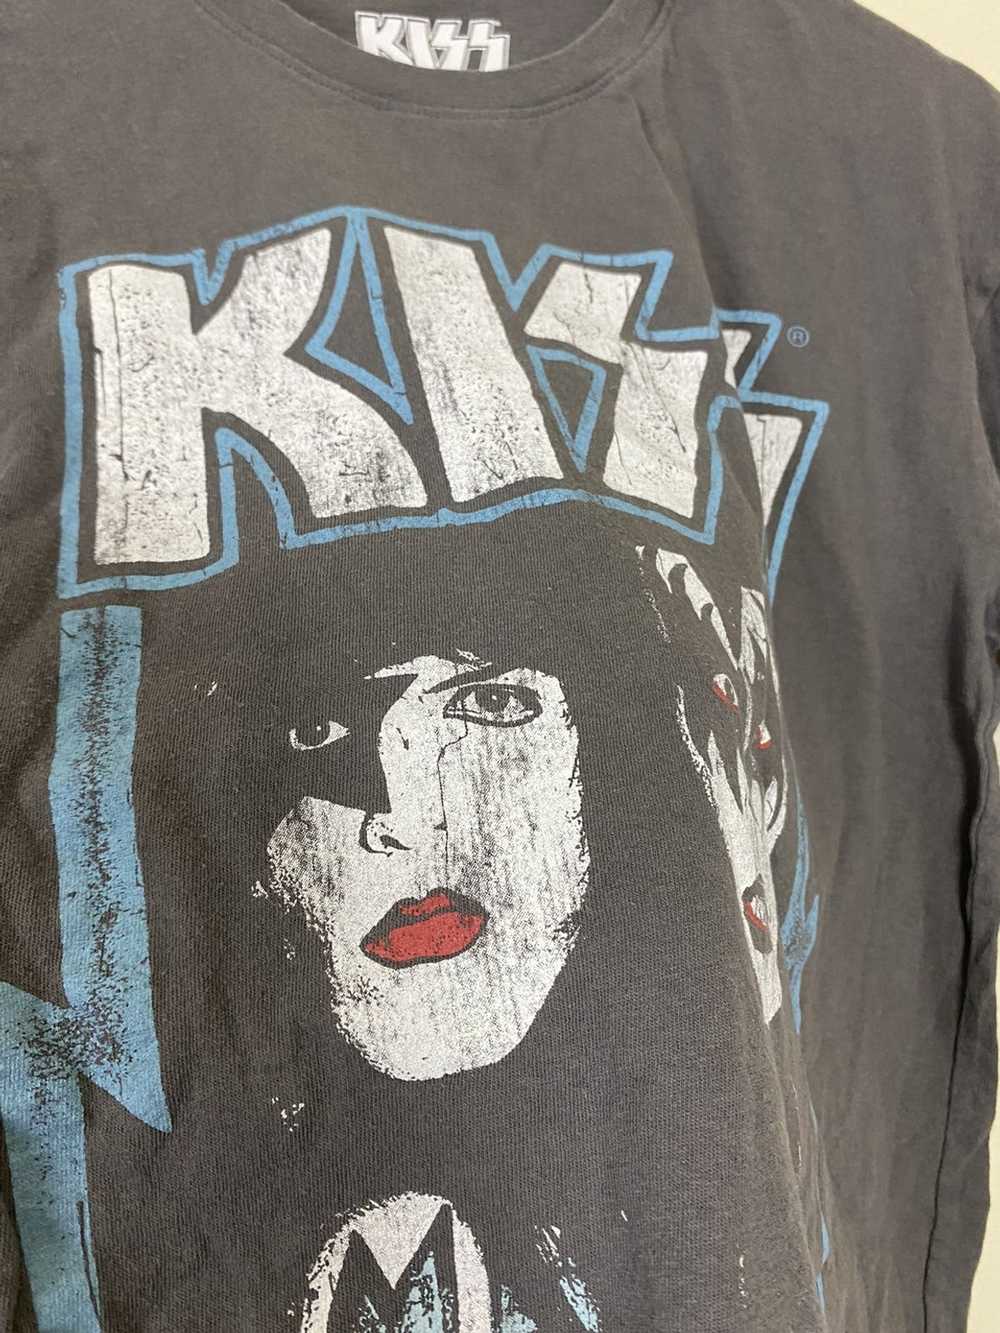 Band Tees × Kiss Kiss American Rock Band Shirt - image 4